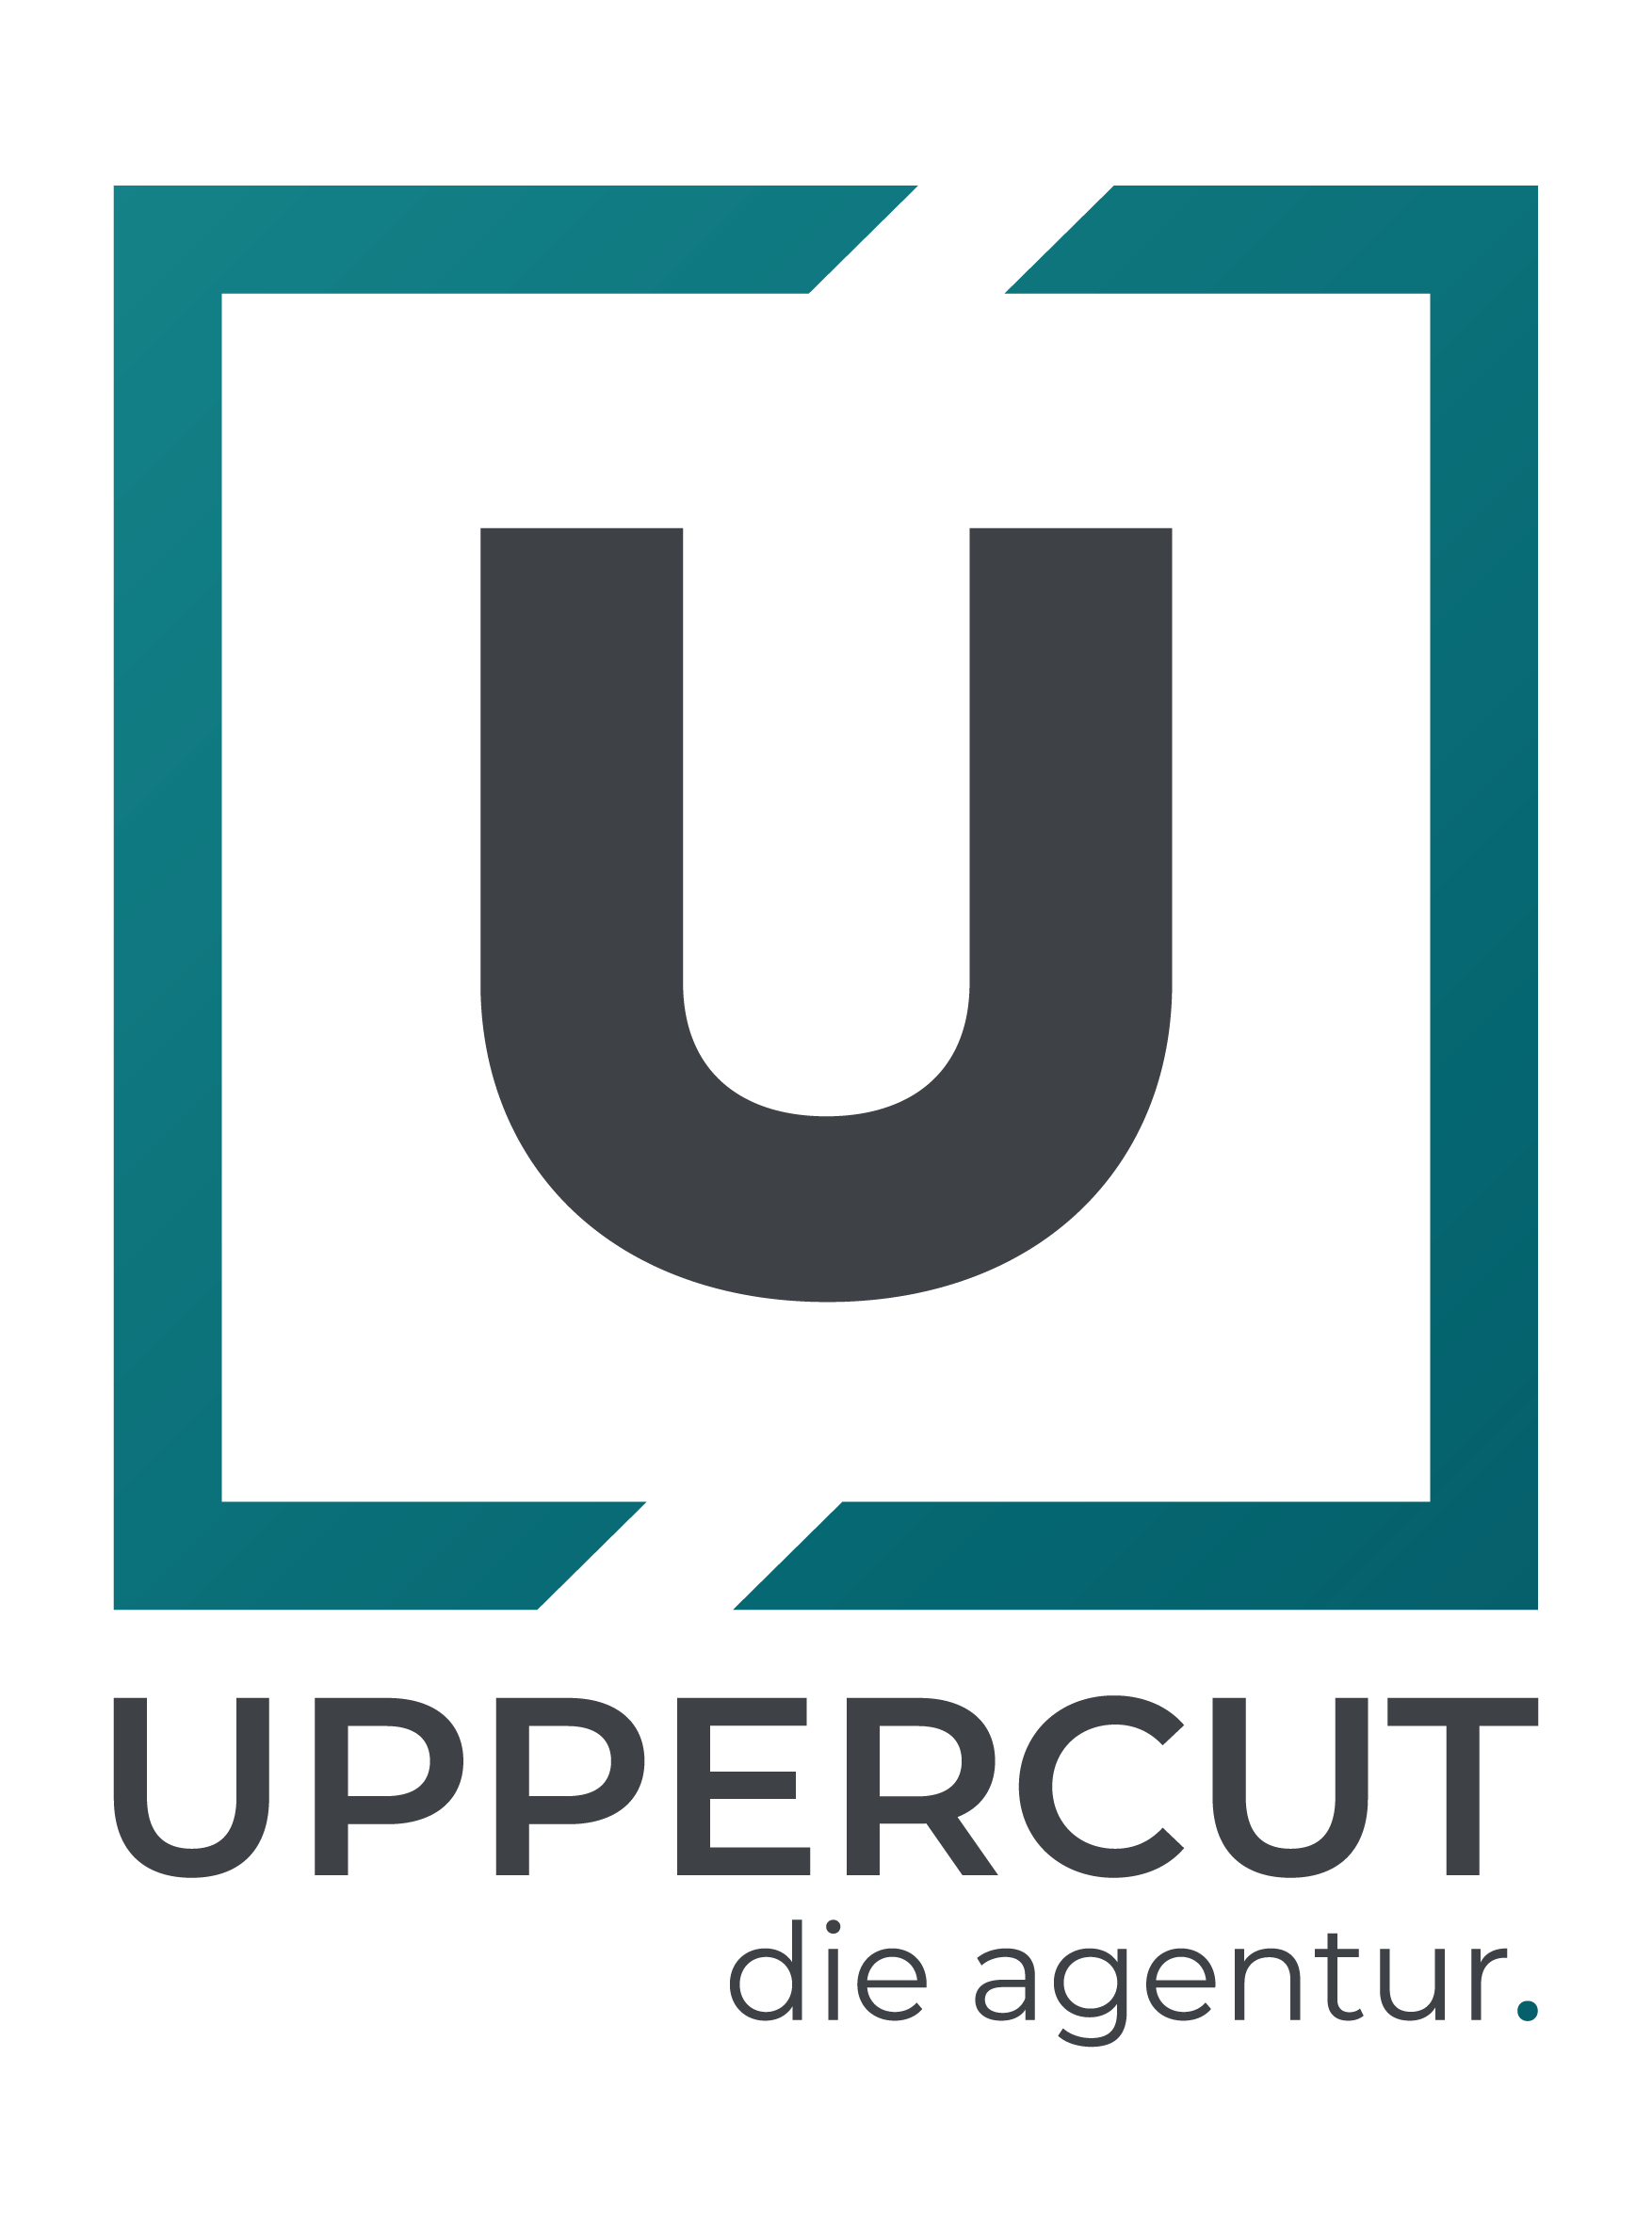 UPPERCUT die agentur GmbH